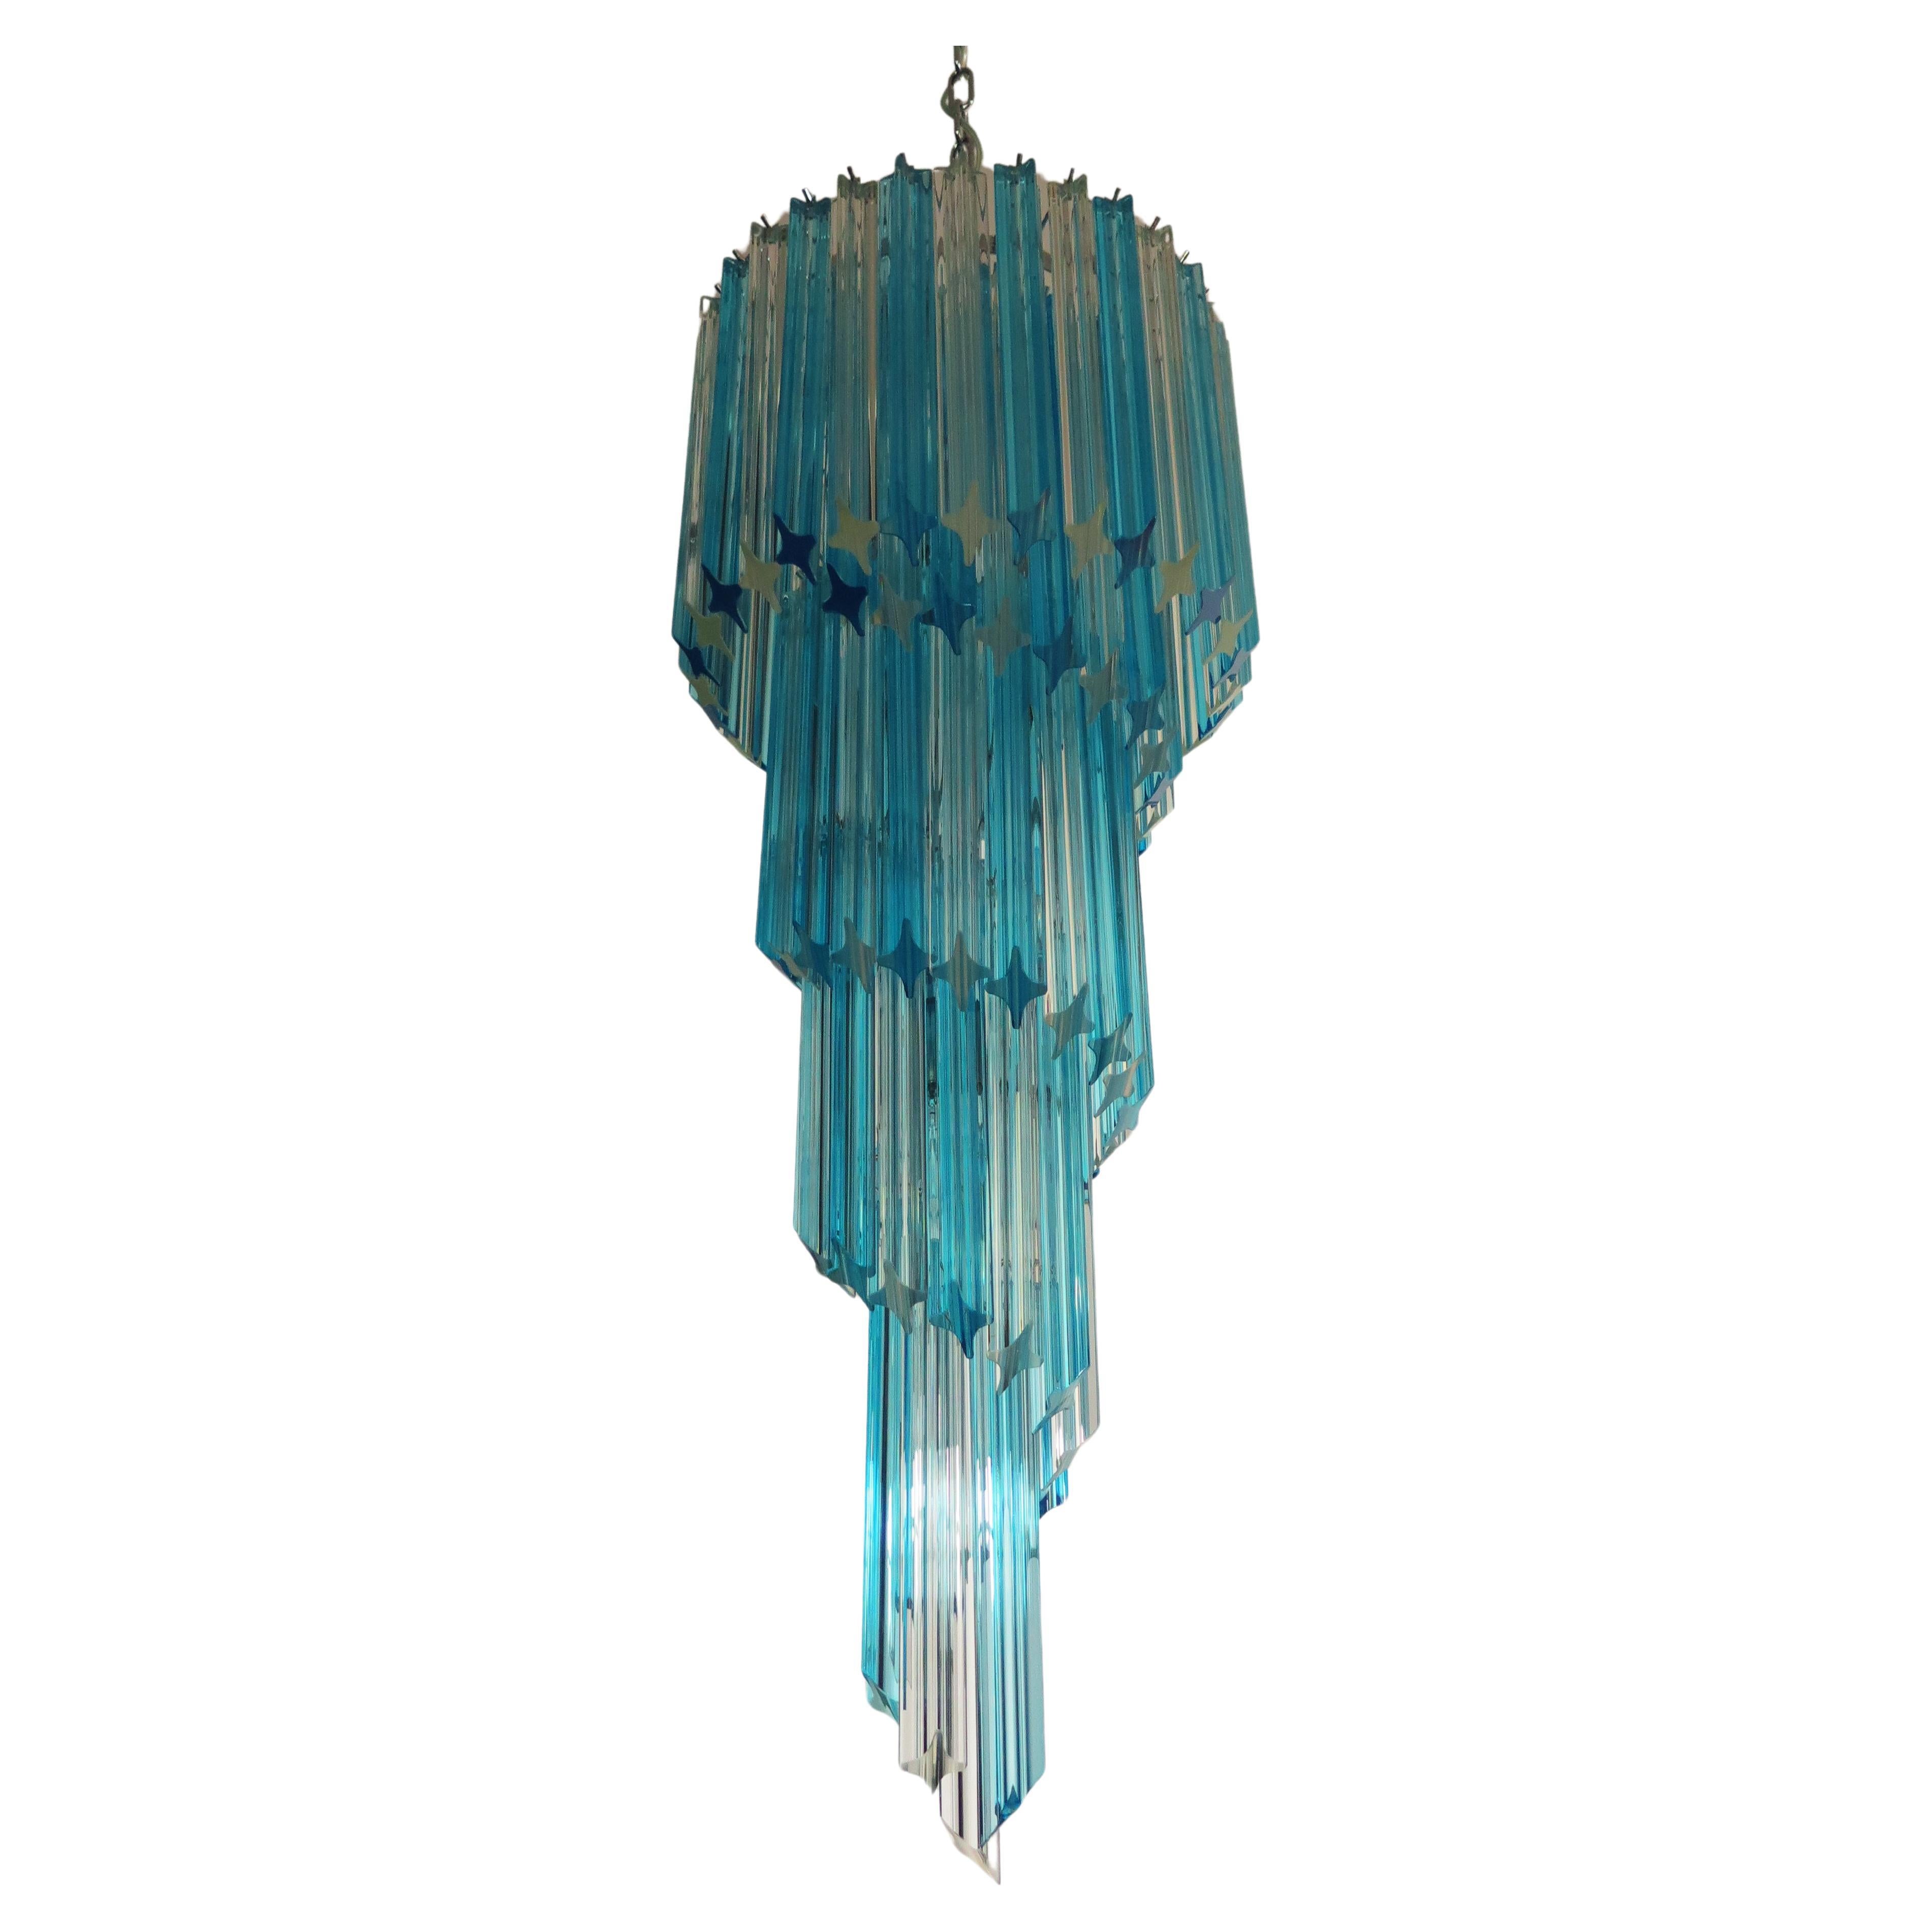 Murano chandelier 86 transparent and blue quadriedri prism